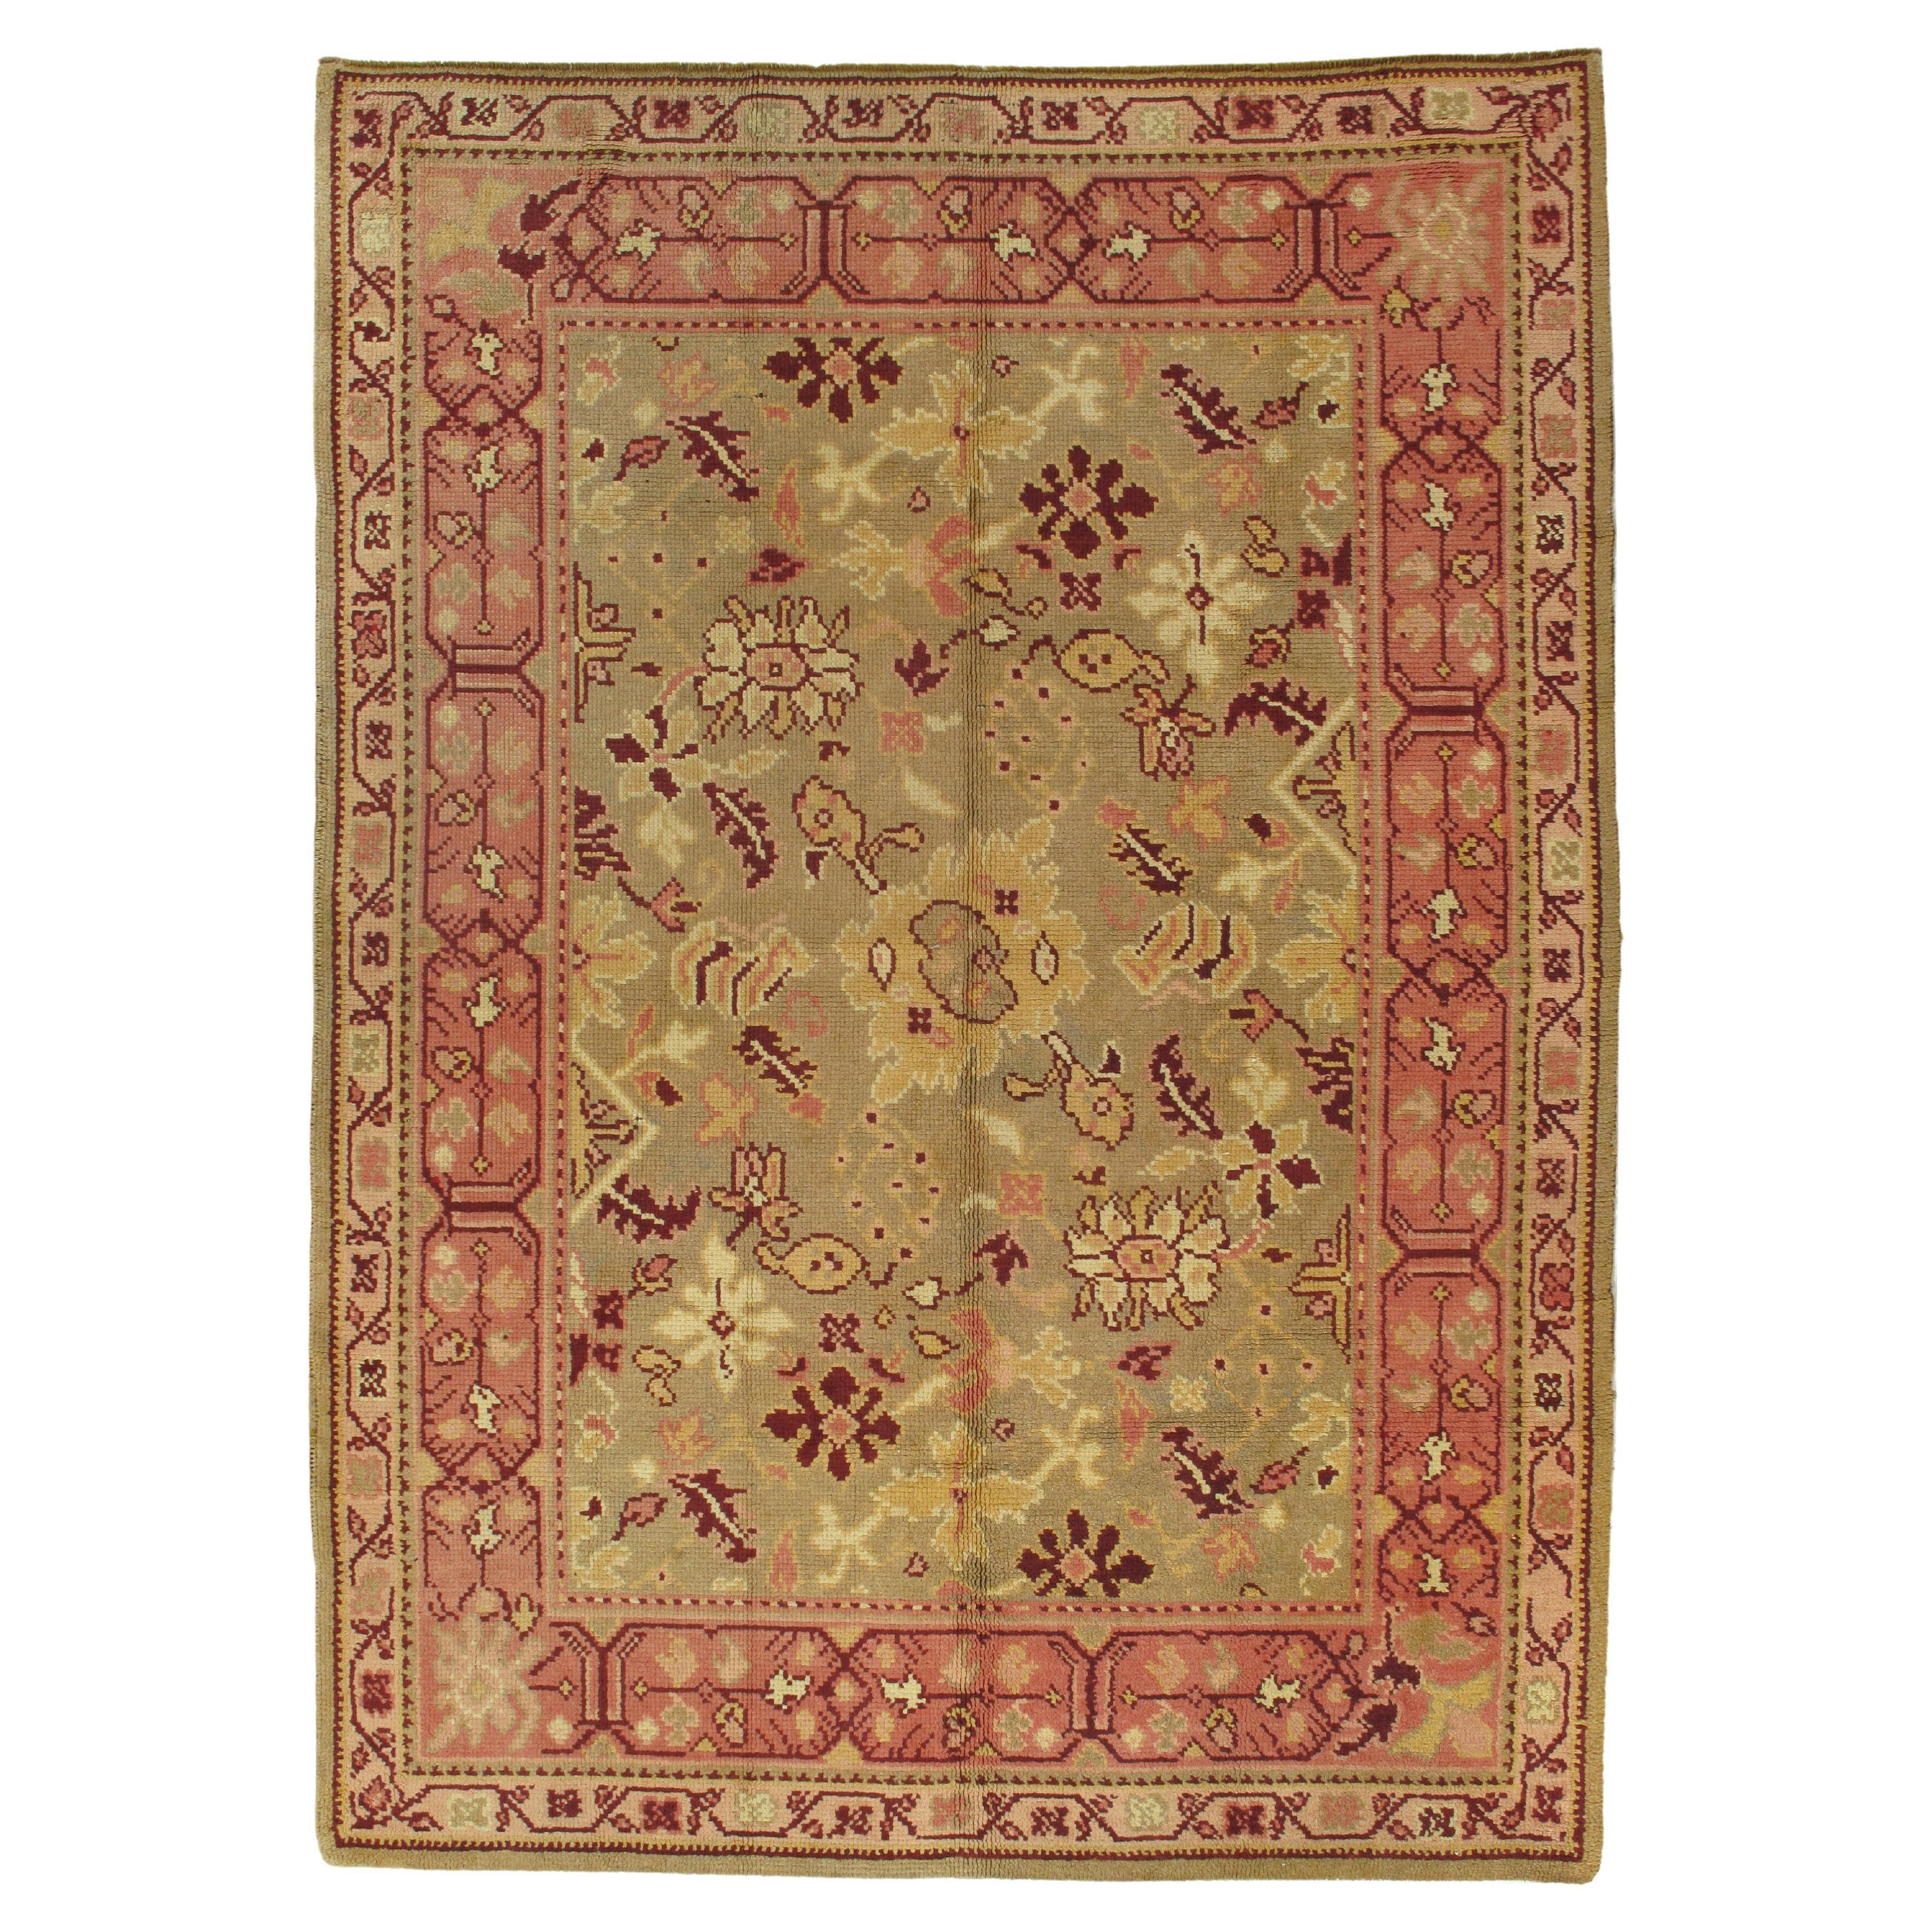 Tapis antique Oushak, tapis oriental fait à la main, vert pâle, corail, taupe et crème